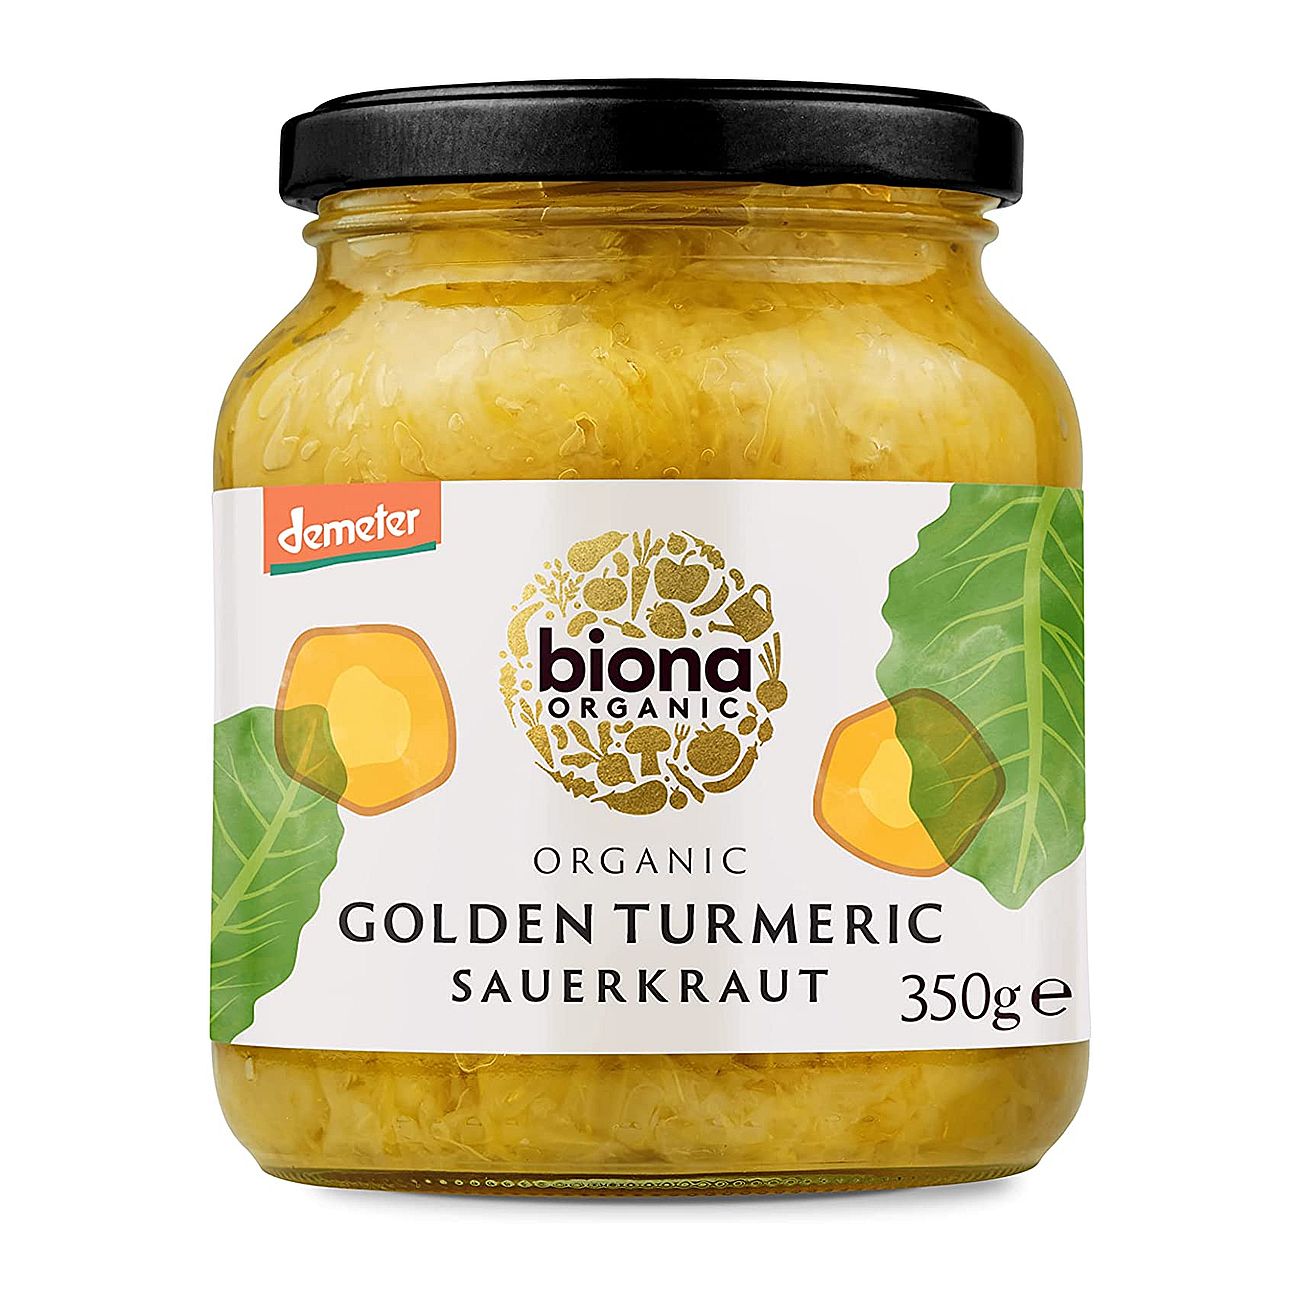 Organic Sauerkraut Golden Turmeric 350g